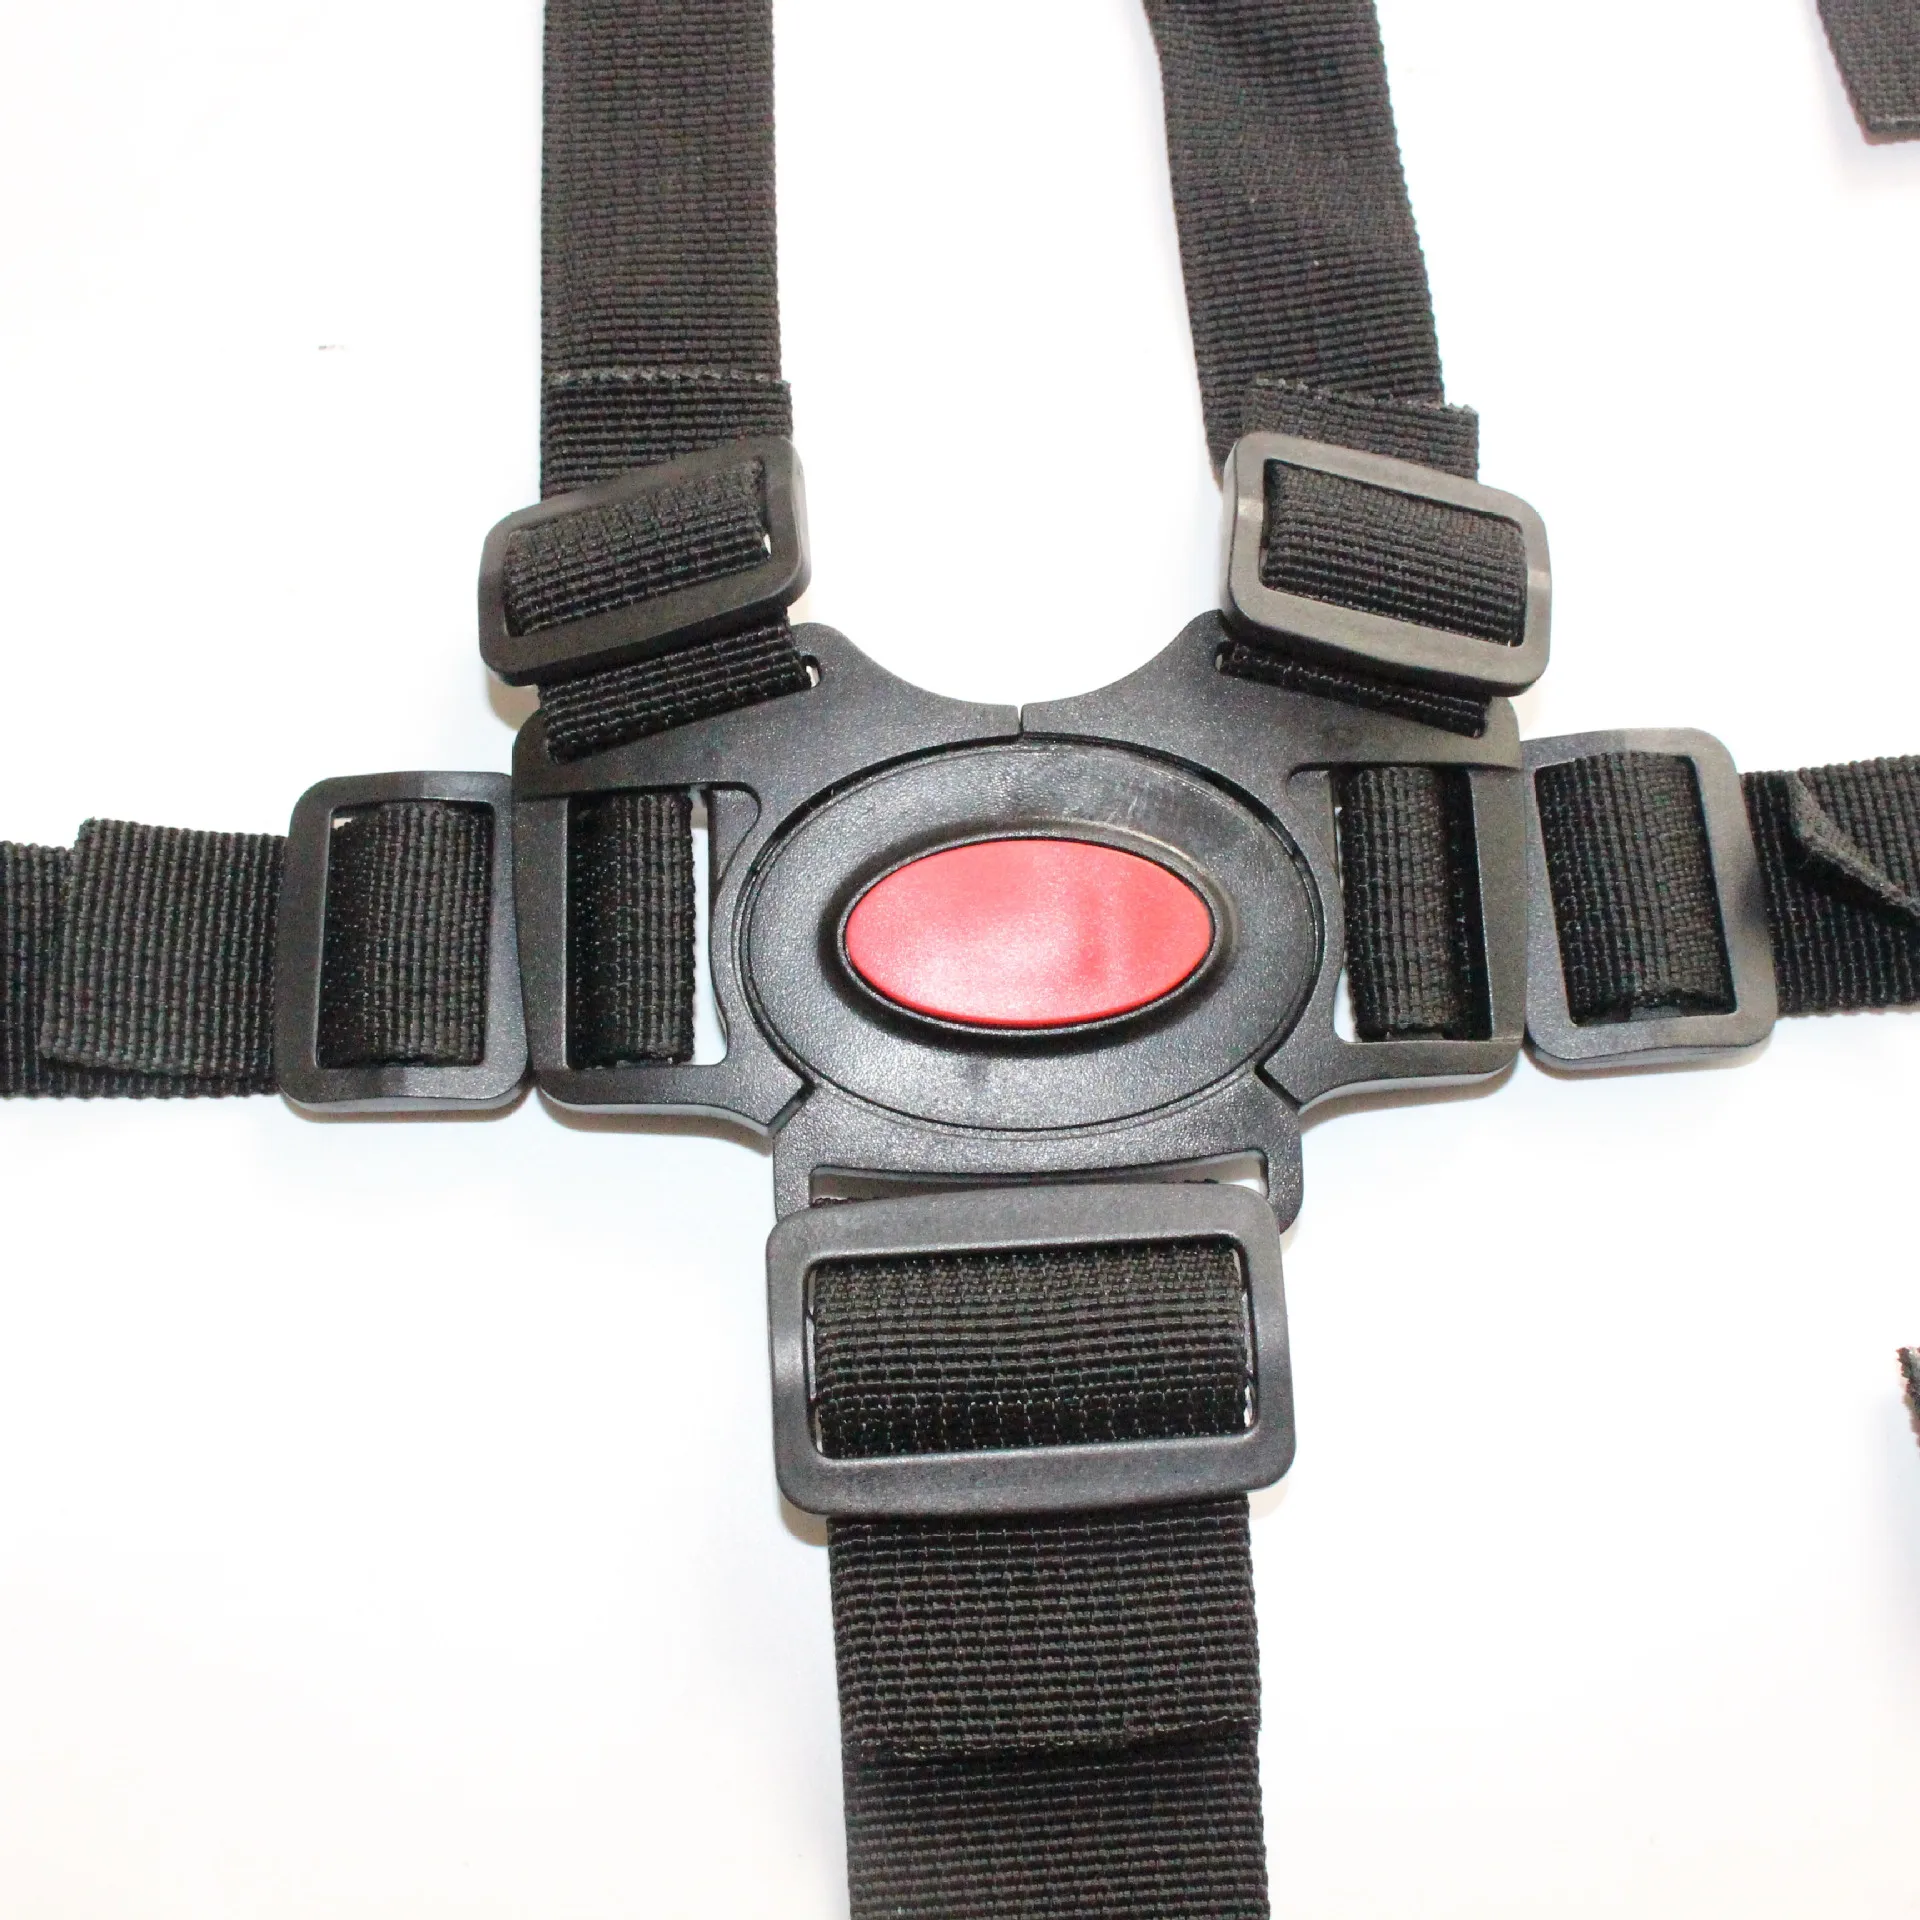 Cinturón de seguridad de nailon para cochecito de bebé, arnés de 5 puntos con gancho giratorio de 360 grados, color negro